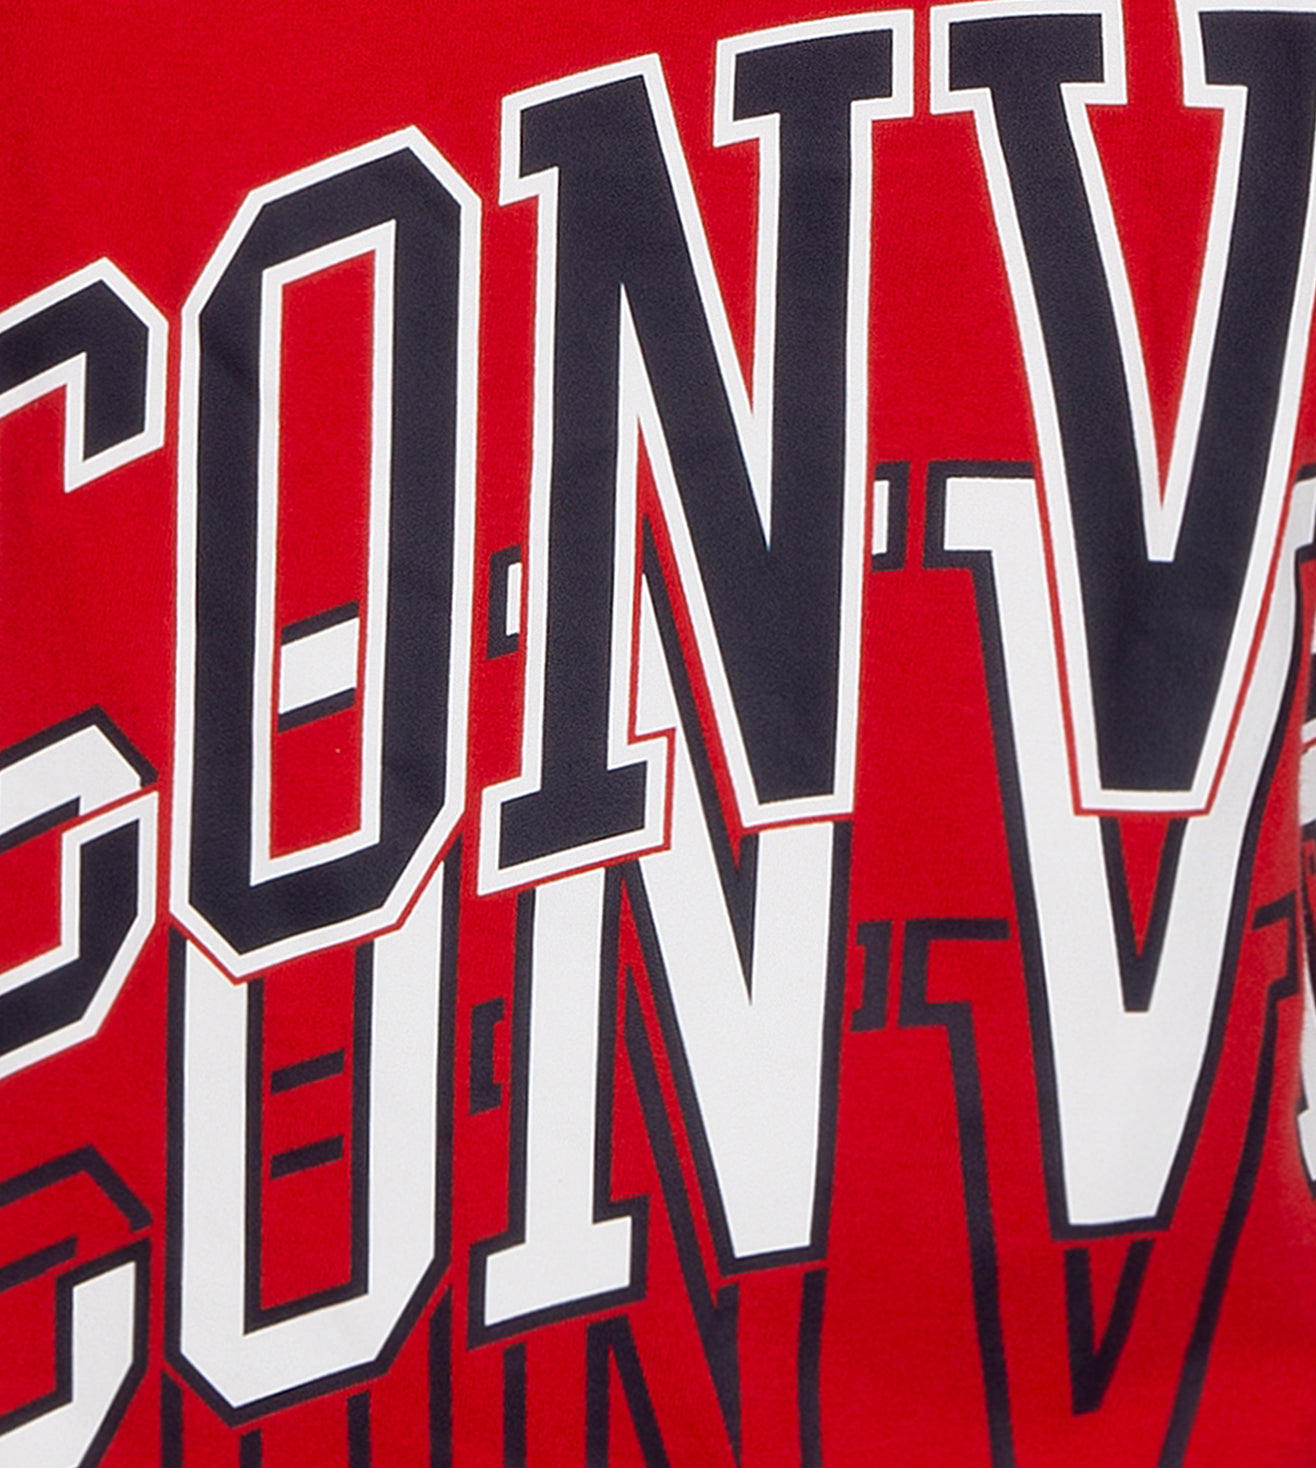 Converse Jersey Logo T-Shirt T Shirt Converse   